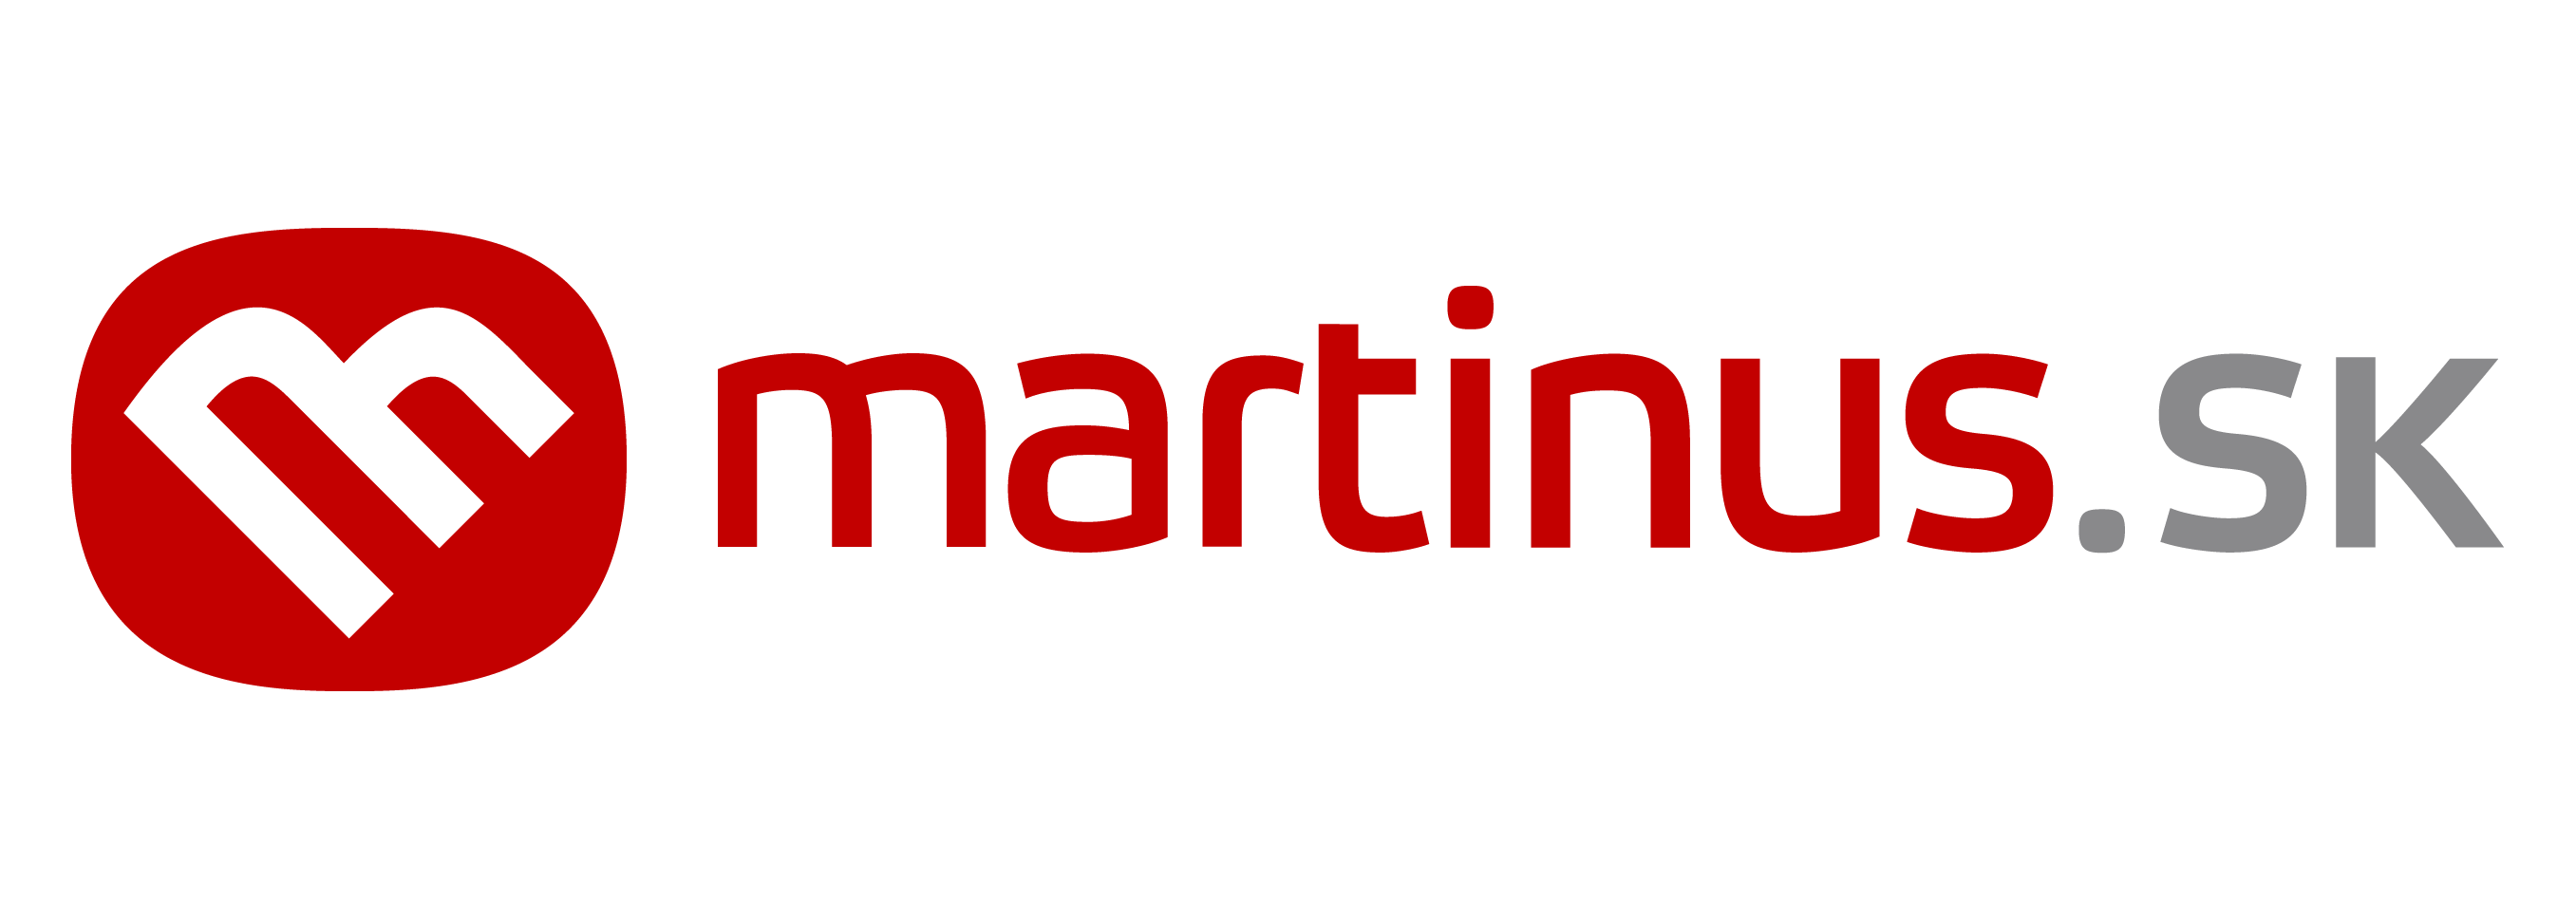 martinus